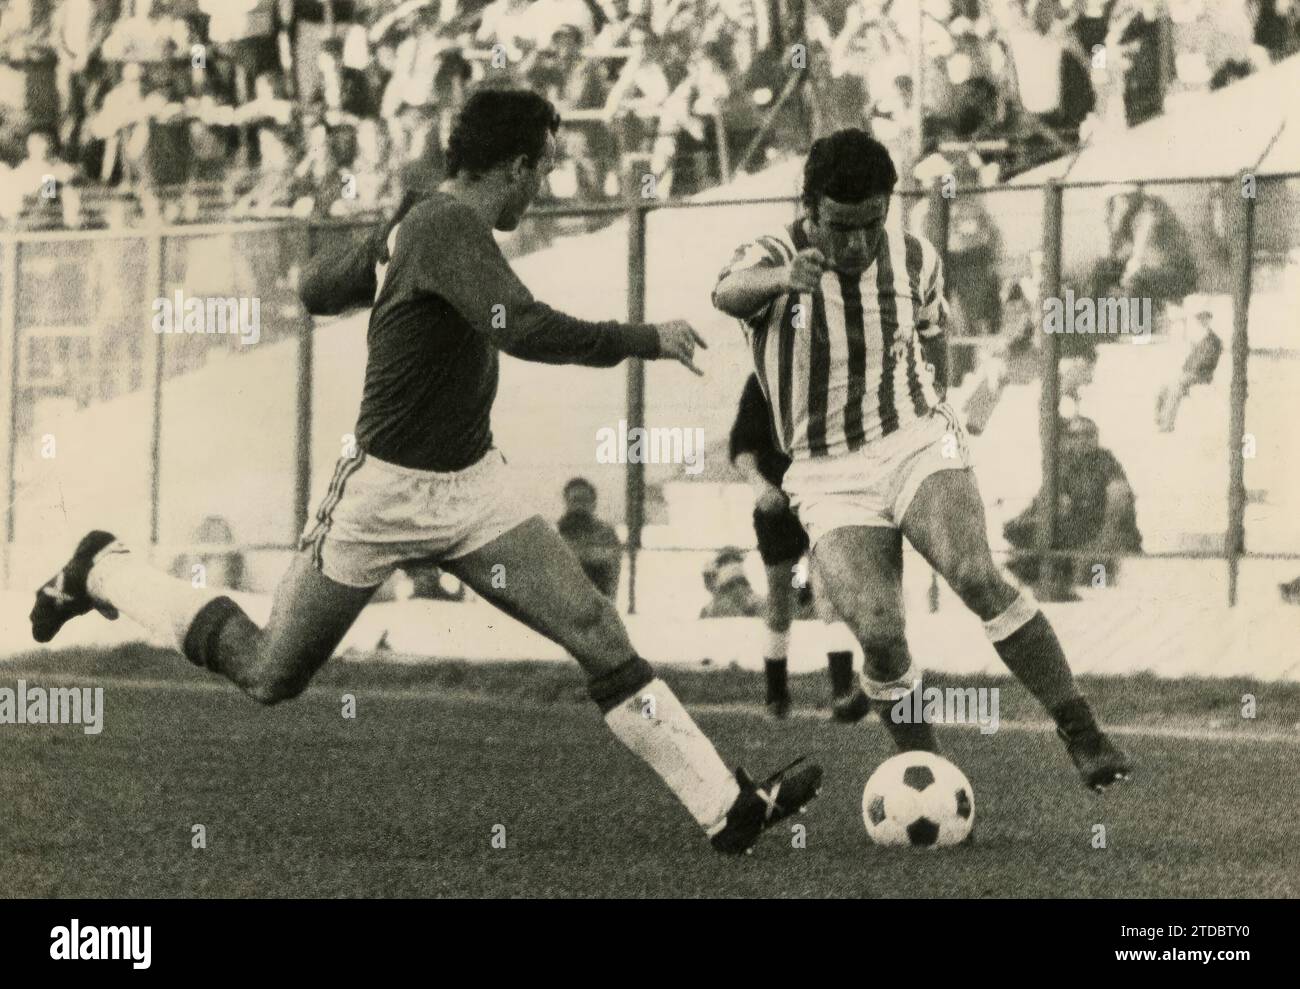 Antonio Benitez Fernandez. Linkshänder mit raffinierter Technik und bewährter Klasse. Er wurde am 2. Juni 1951 in Jerez de la Frontera geboren. 1969 erreichte er Betis in der zweiten Division. Er debütierte in der ersten Liga am 3. Oktober 1971 im Spiel Valencia-Betis, wobei Levantina mit 2:0 gewann. Er blieb bis zum Ende der Saison 1982-83 bei Betis, danach ging er in den Ruhestand. In der ersten Liga spielte er zehn Saisons mit insgesamt 203 Spielen und 14 Toren. Benítez Er war ein Vorreiter für Betis, der am 25. Juni 1977 Sieger der Copa del Rey Juan Carlos I wurde. In der im Stockfoto